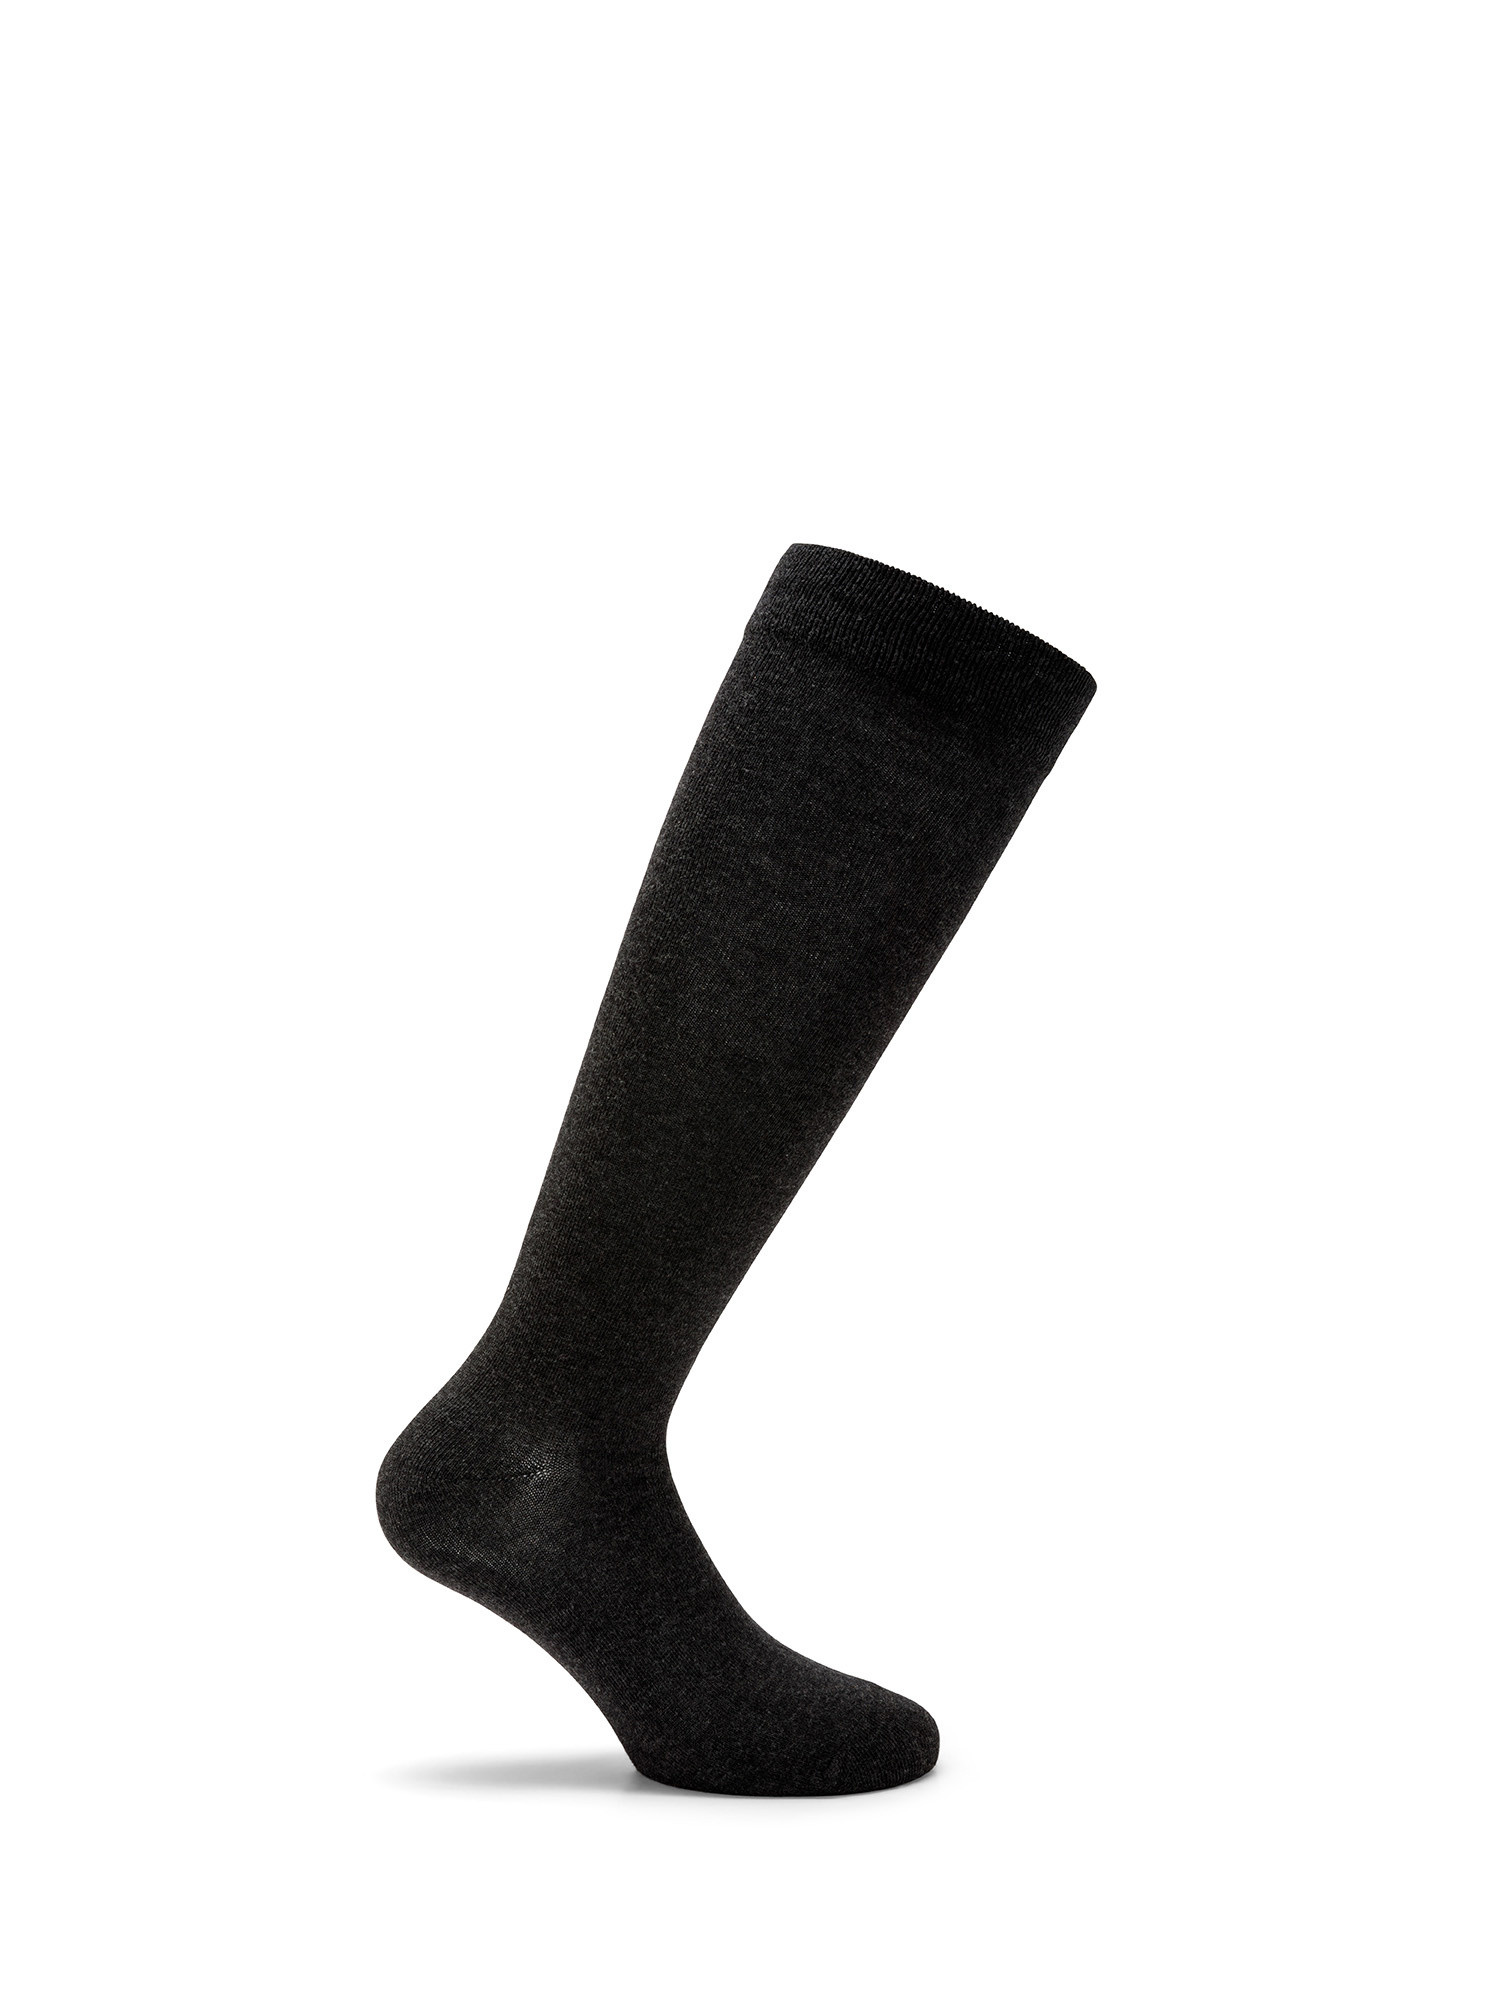 Luca D'Altieri - Set of 3 patterned long socks, Grey, large image number 2